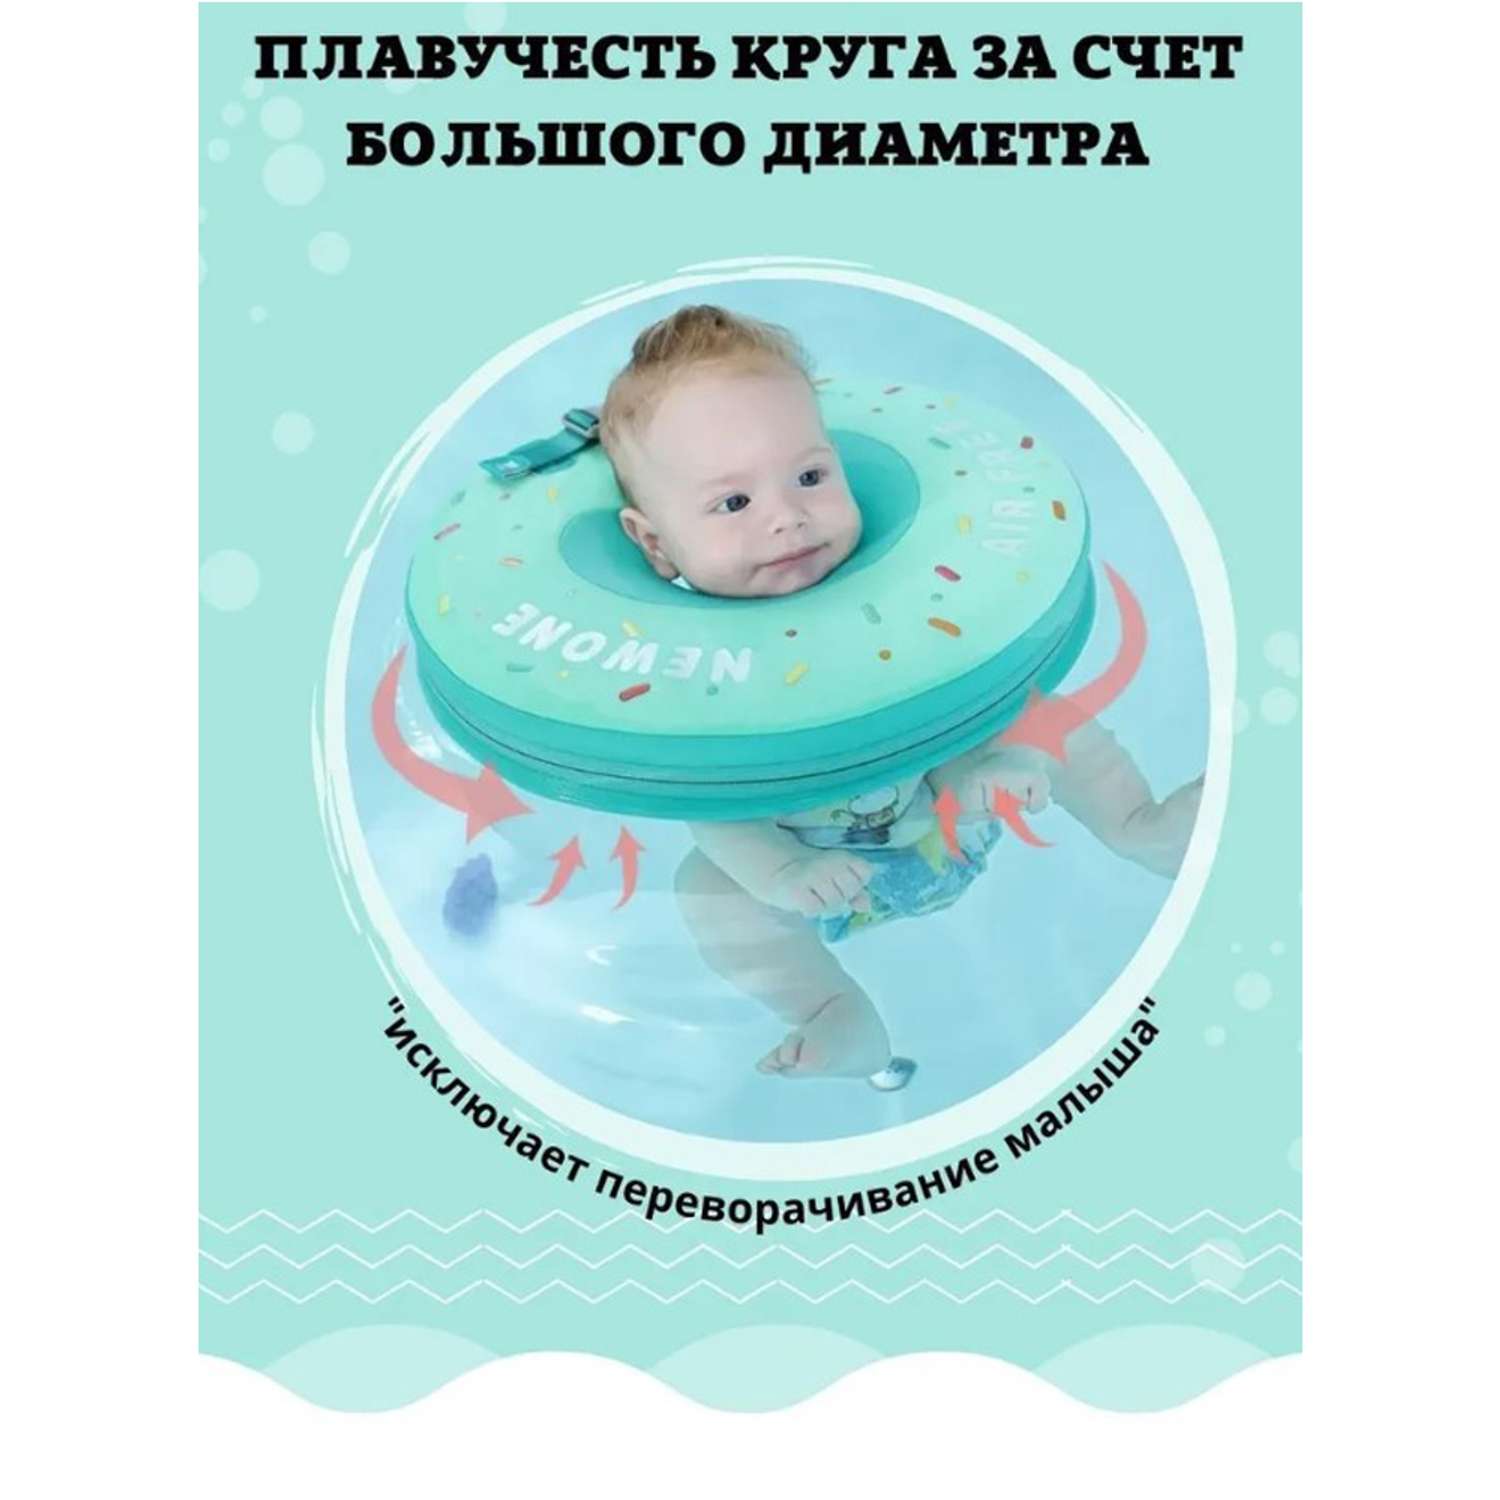 Круг на шею детский Newone для купания малышей. Размер M (0-12 месяцев) - фото 12